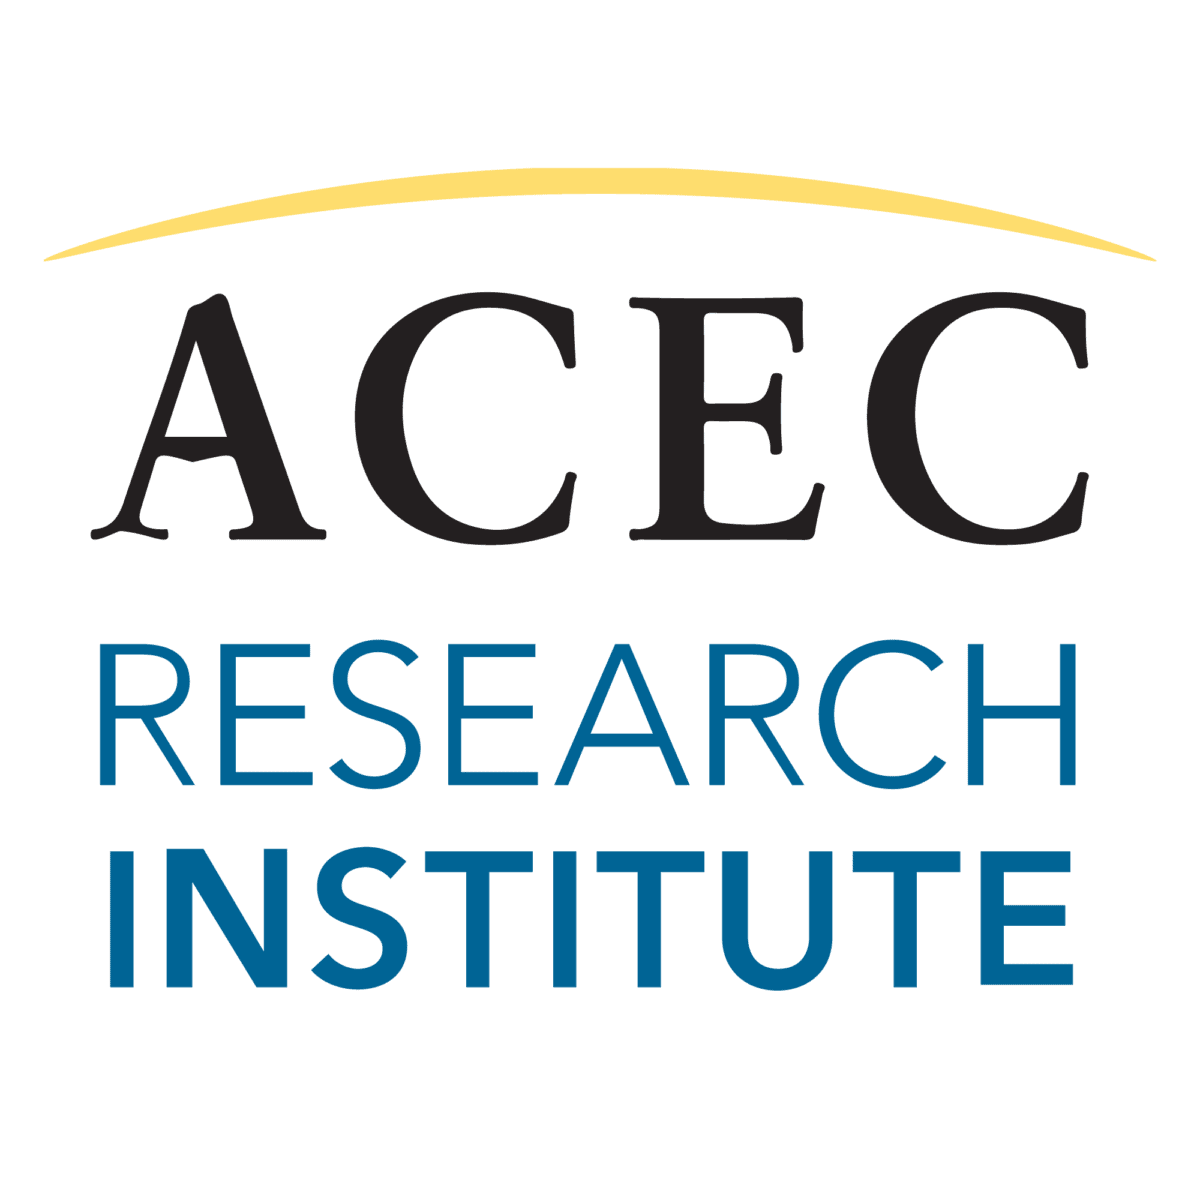 ACEC Research Institute logo